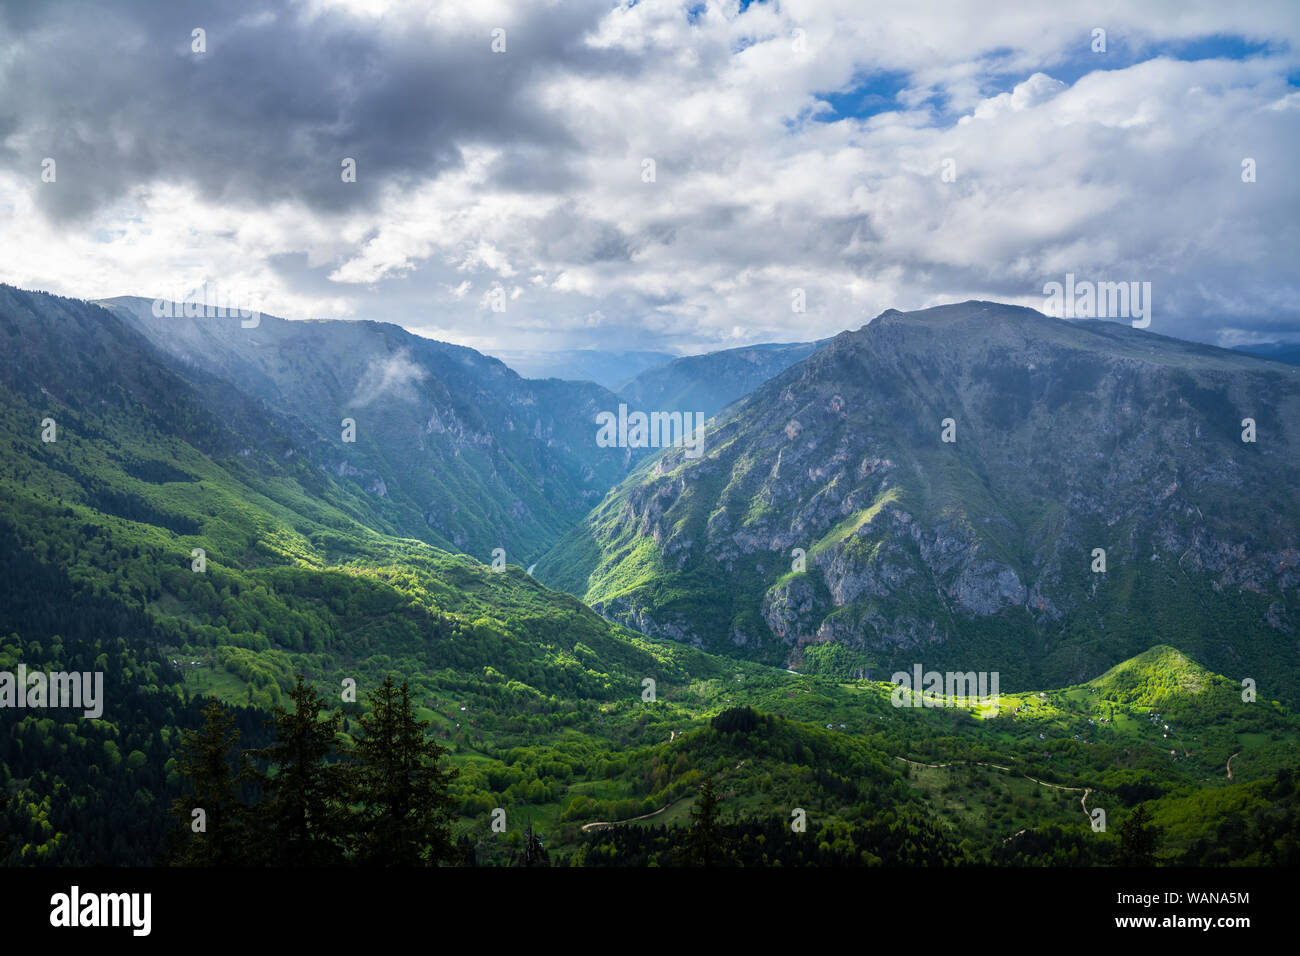 Montenegro, spektakulären Fluss Tara Canyon Natur Landschaft mit grünen bewaldeten riesige Berge von Tara Fluss in magisches Licht überquerte Nach dem Regen in d Stockfoto